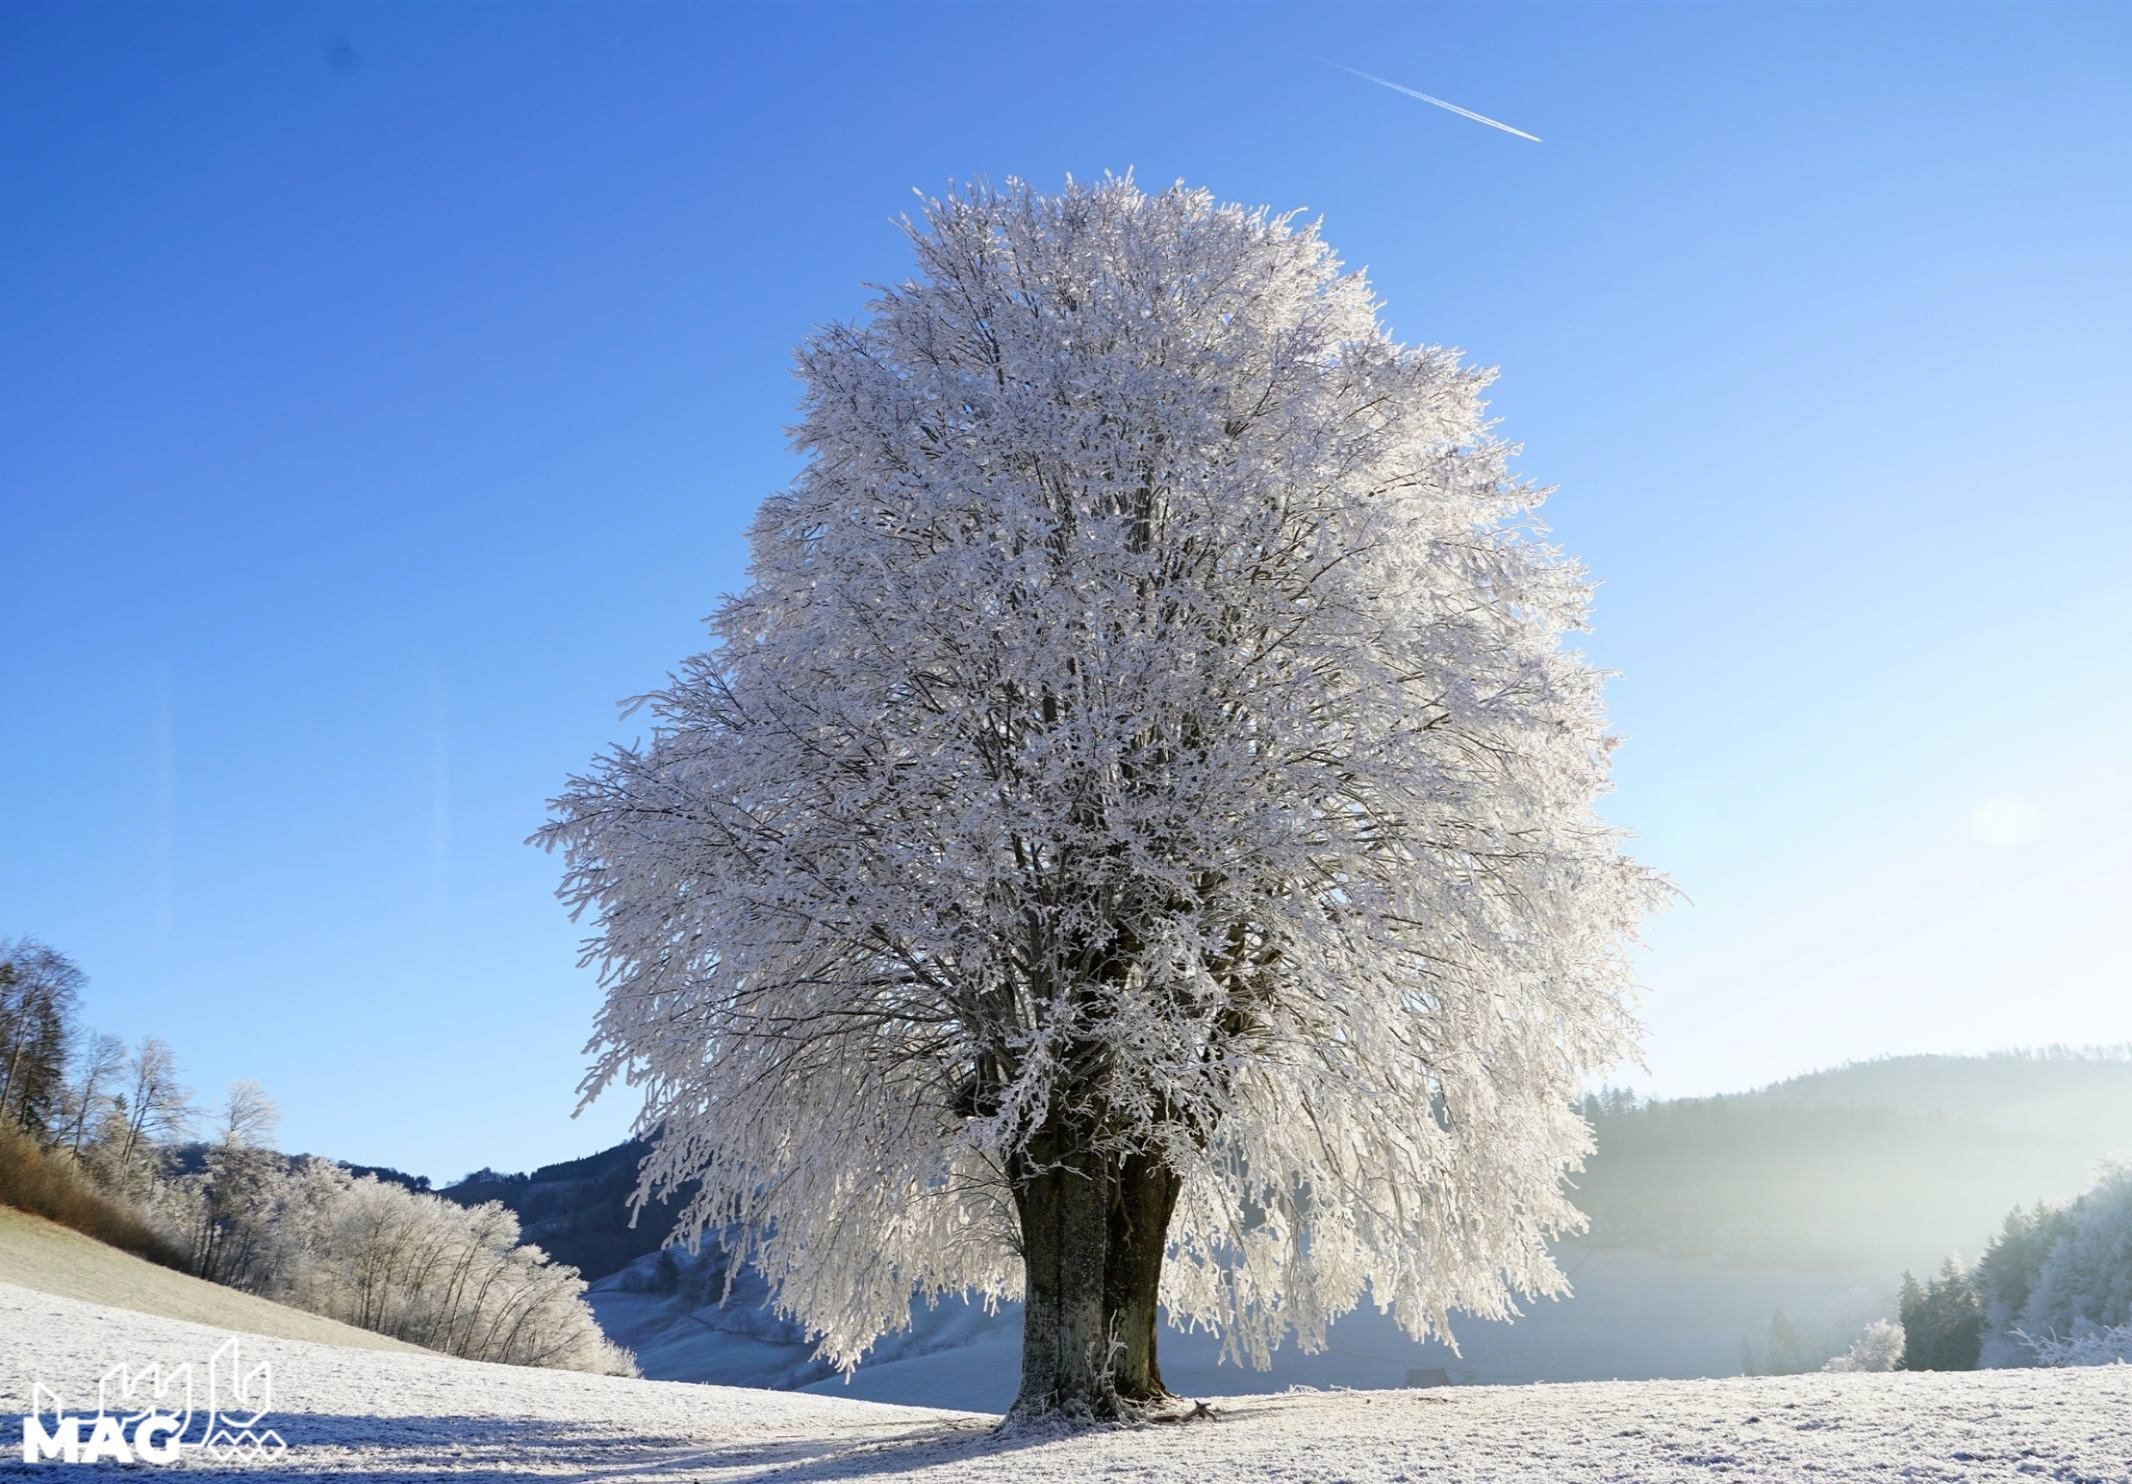 تک درخت برفی - عکس منظره برفی با کیفیت بالا